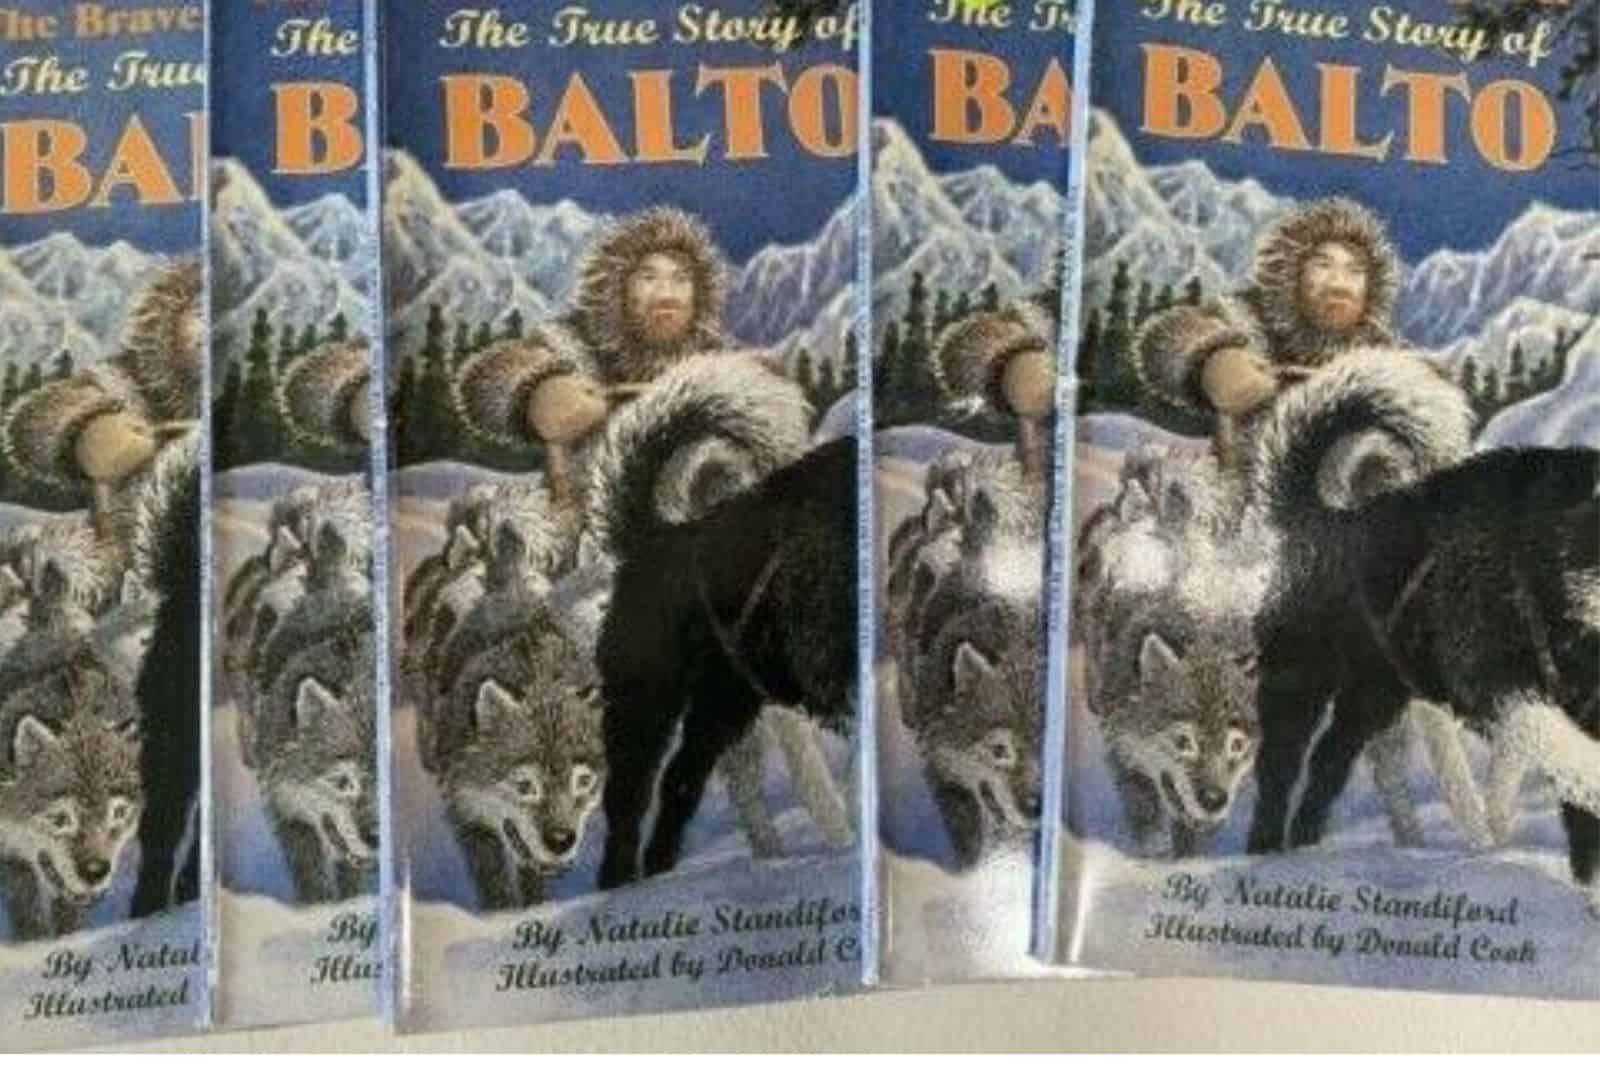 The True Story Of Balto book